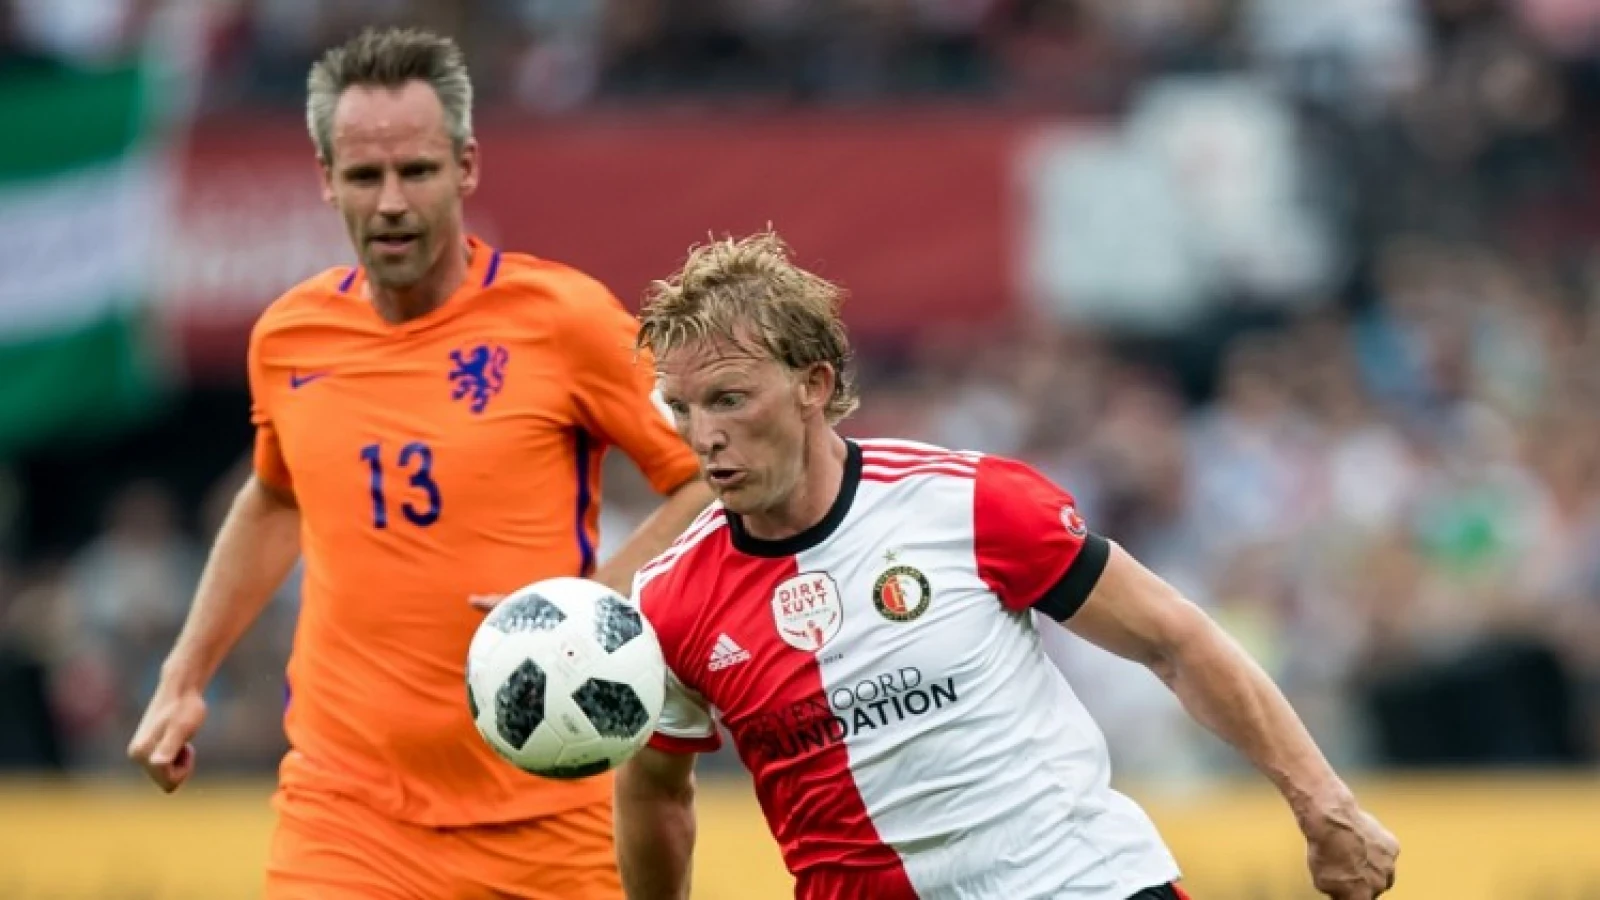 Ooijer haalt uit naar Feyenoordsupporters: 'Kennelijk kan dat allemaal'